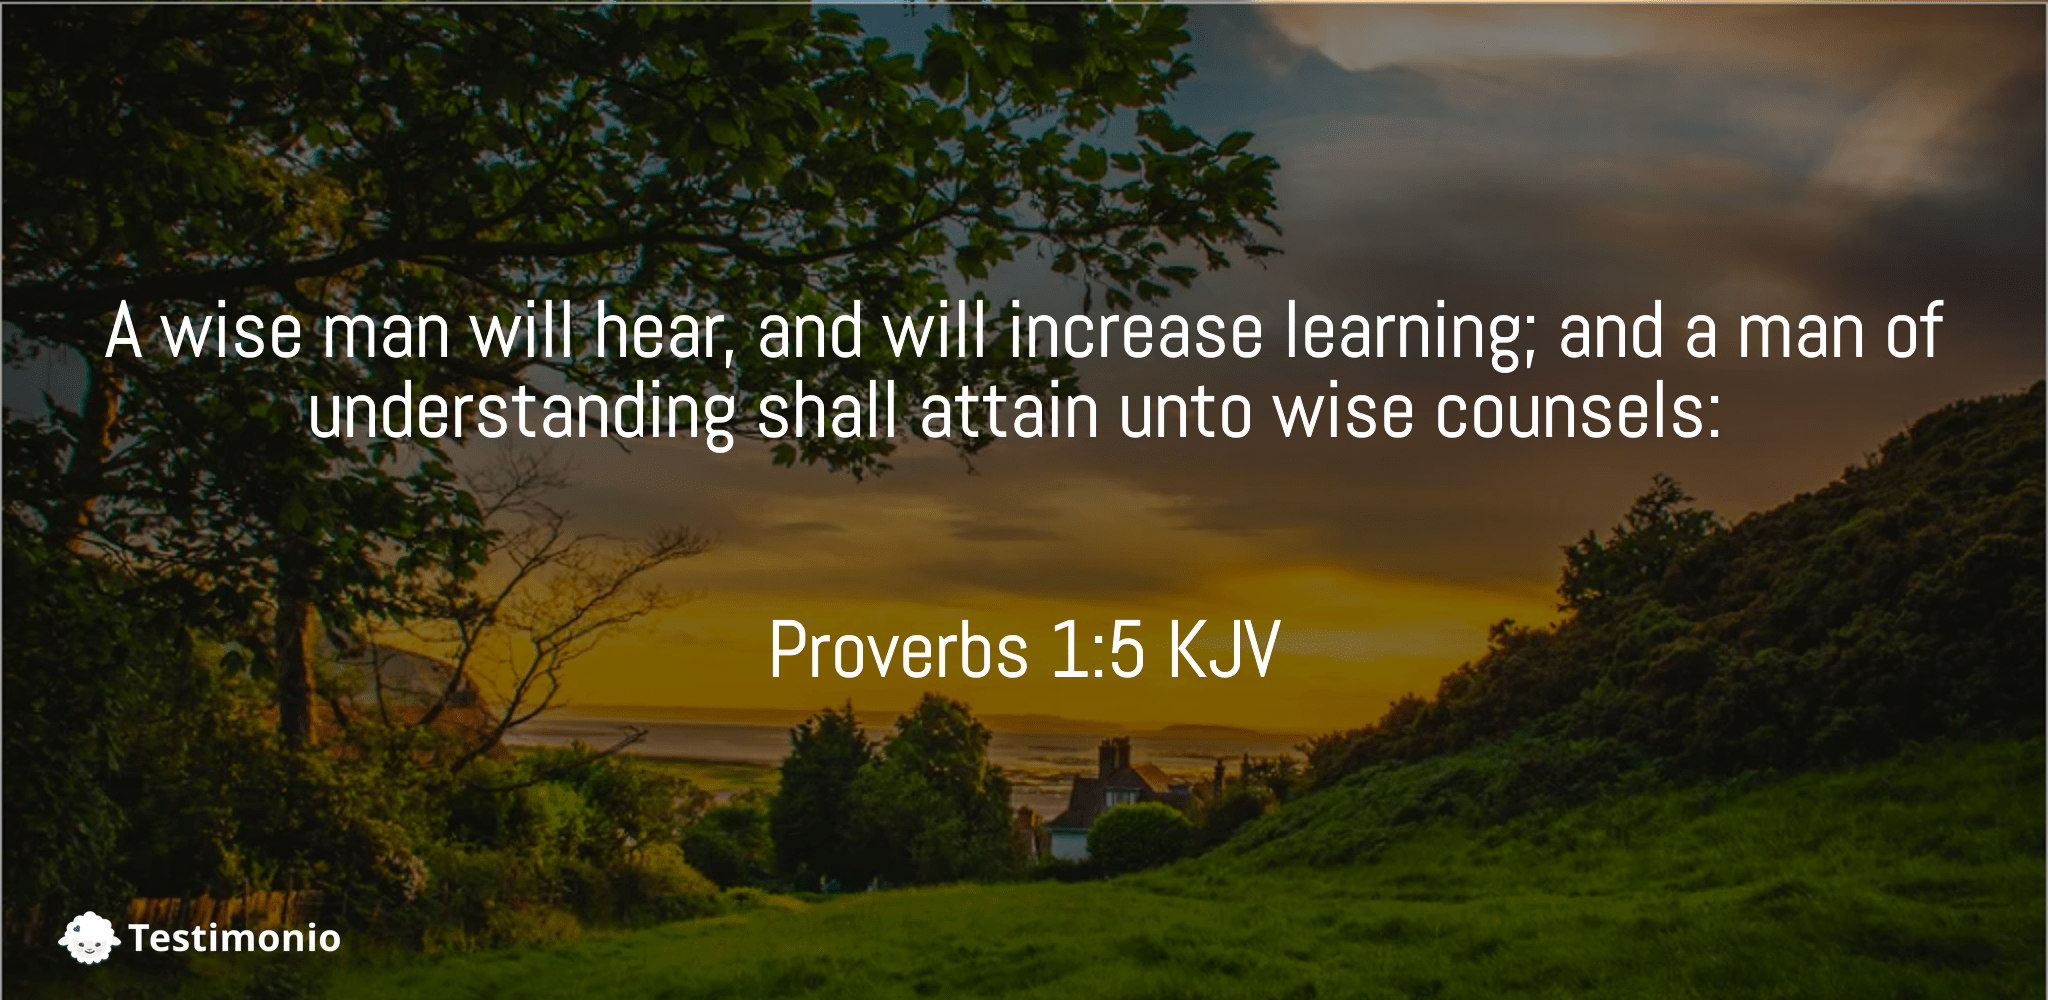 Proverbs 1:5